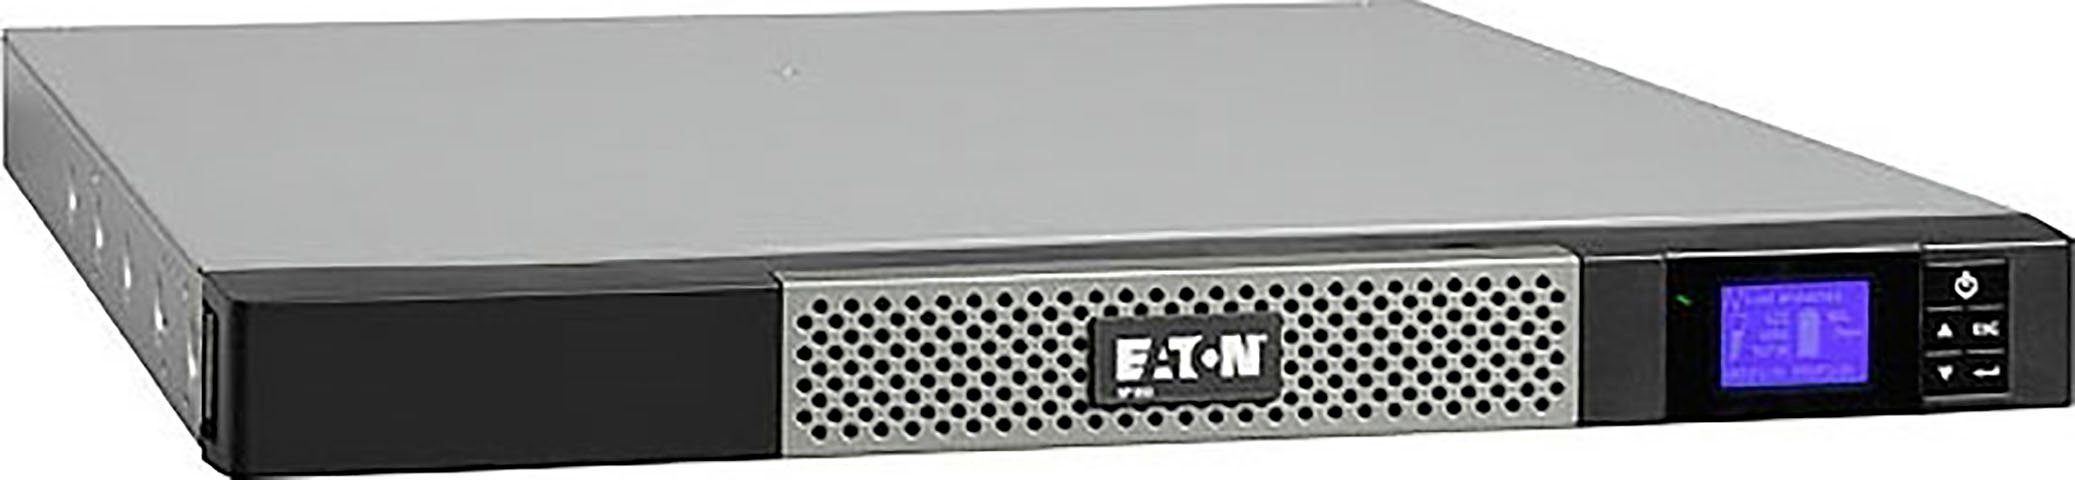 EATON USV-Anlage 5P Rack 850VA/600W 850i 1U